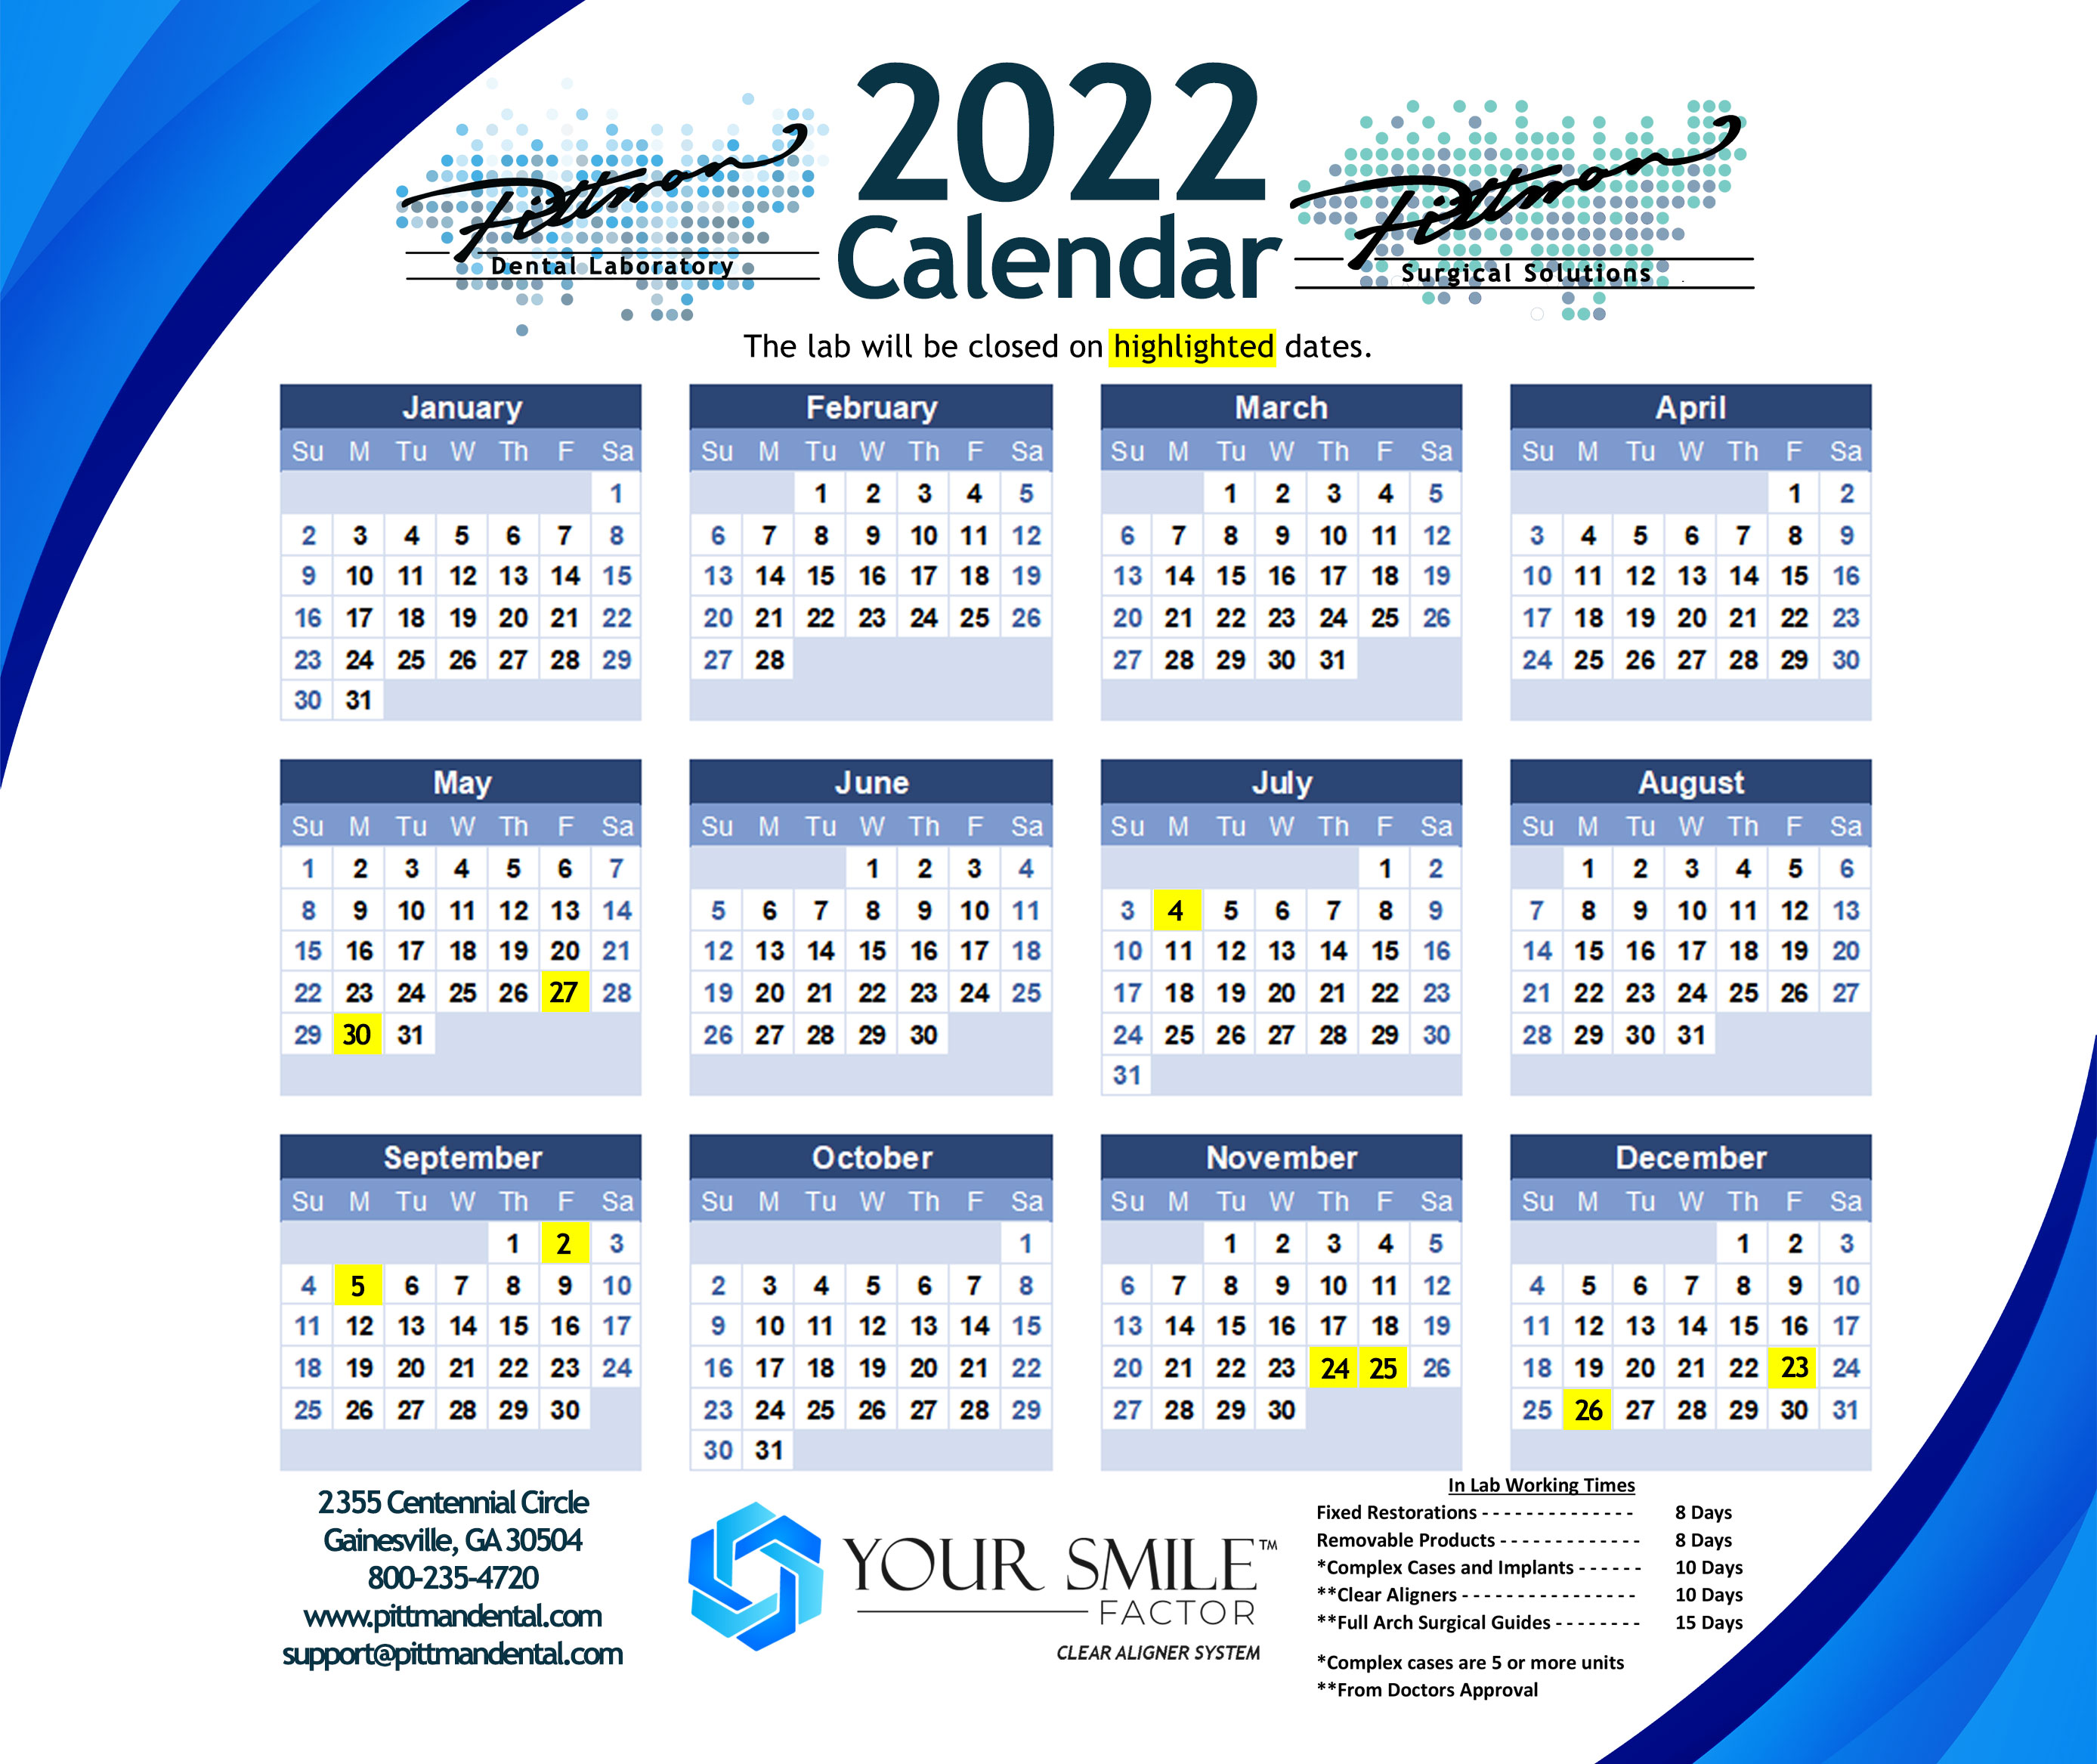 Pittman-2022-Calendar-Mouse-Pad-09292021